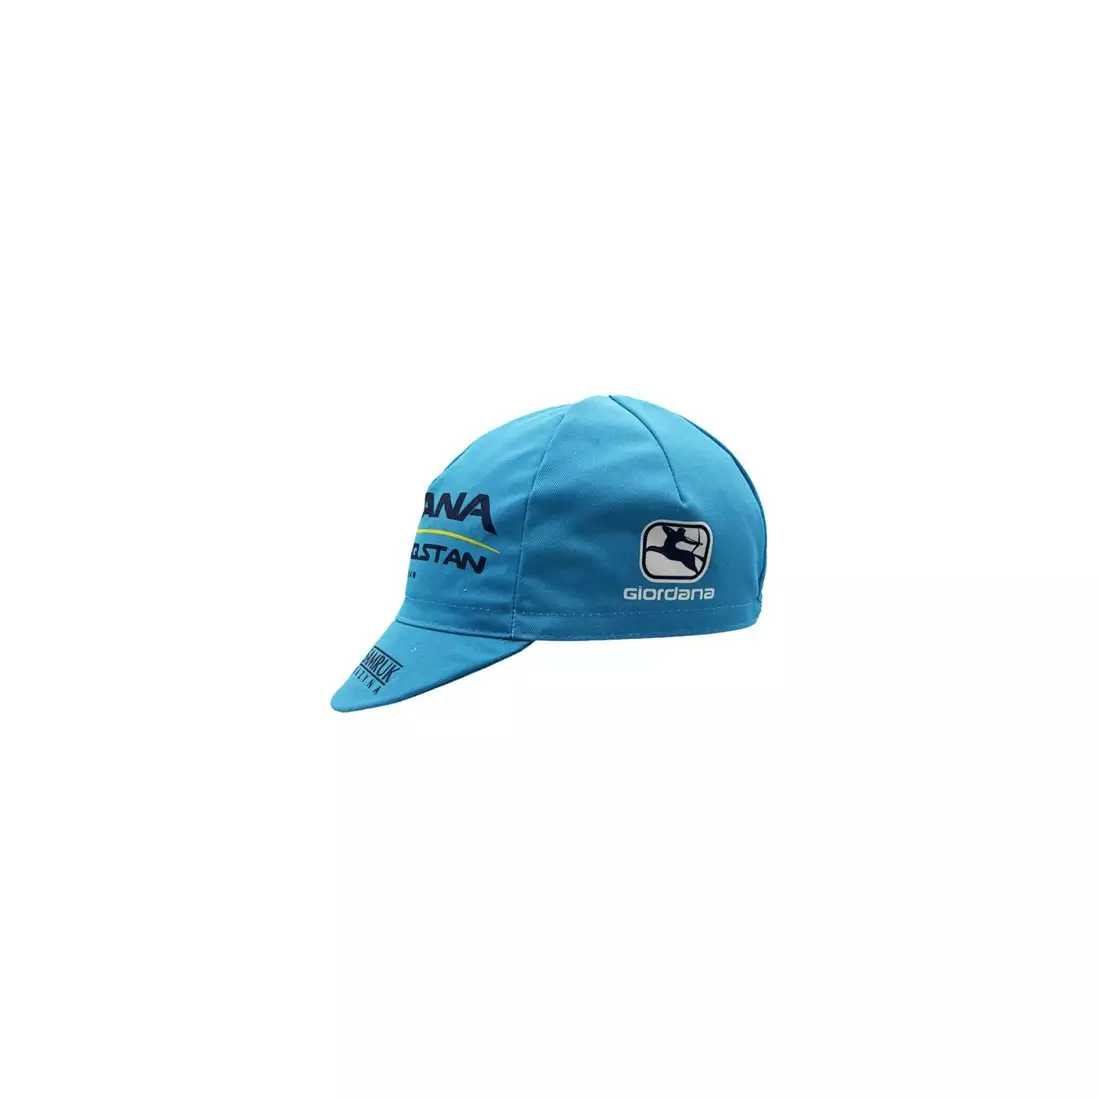 APIS PROFI ASTANA cycling cap with visor